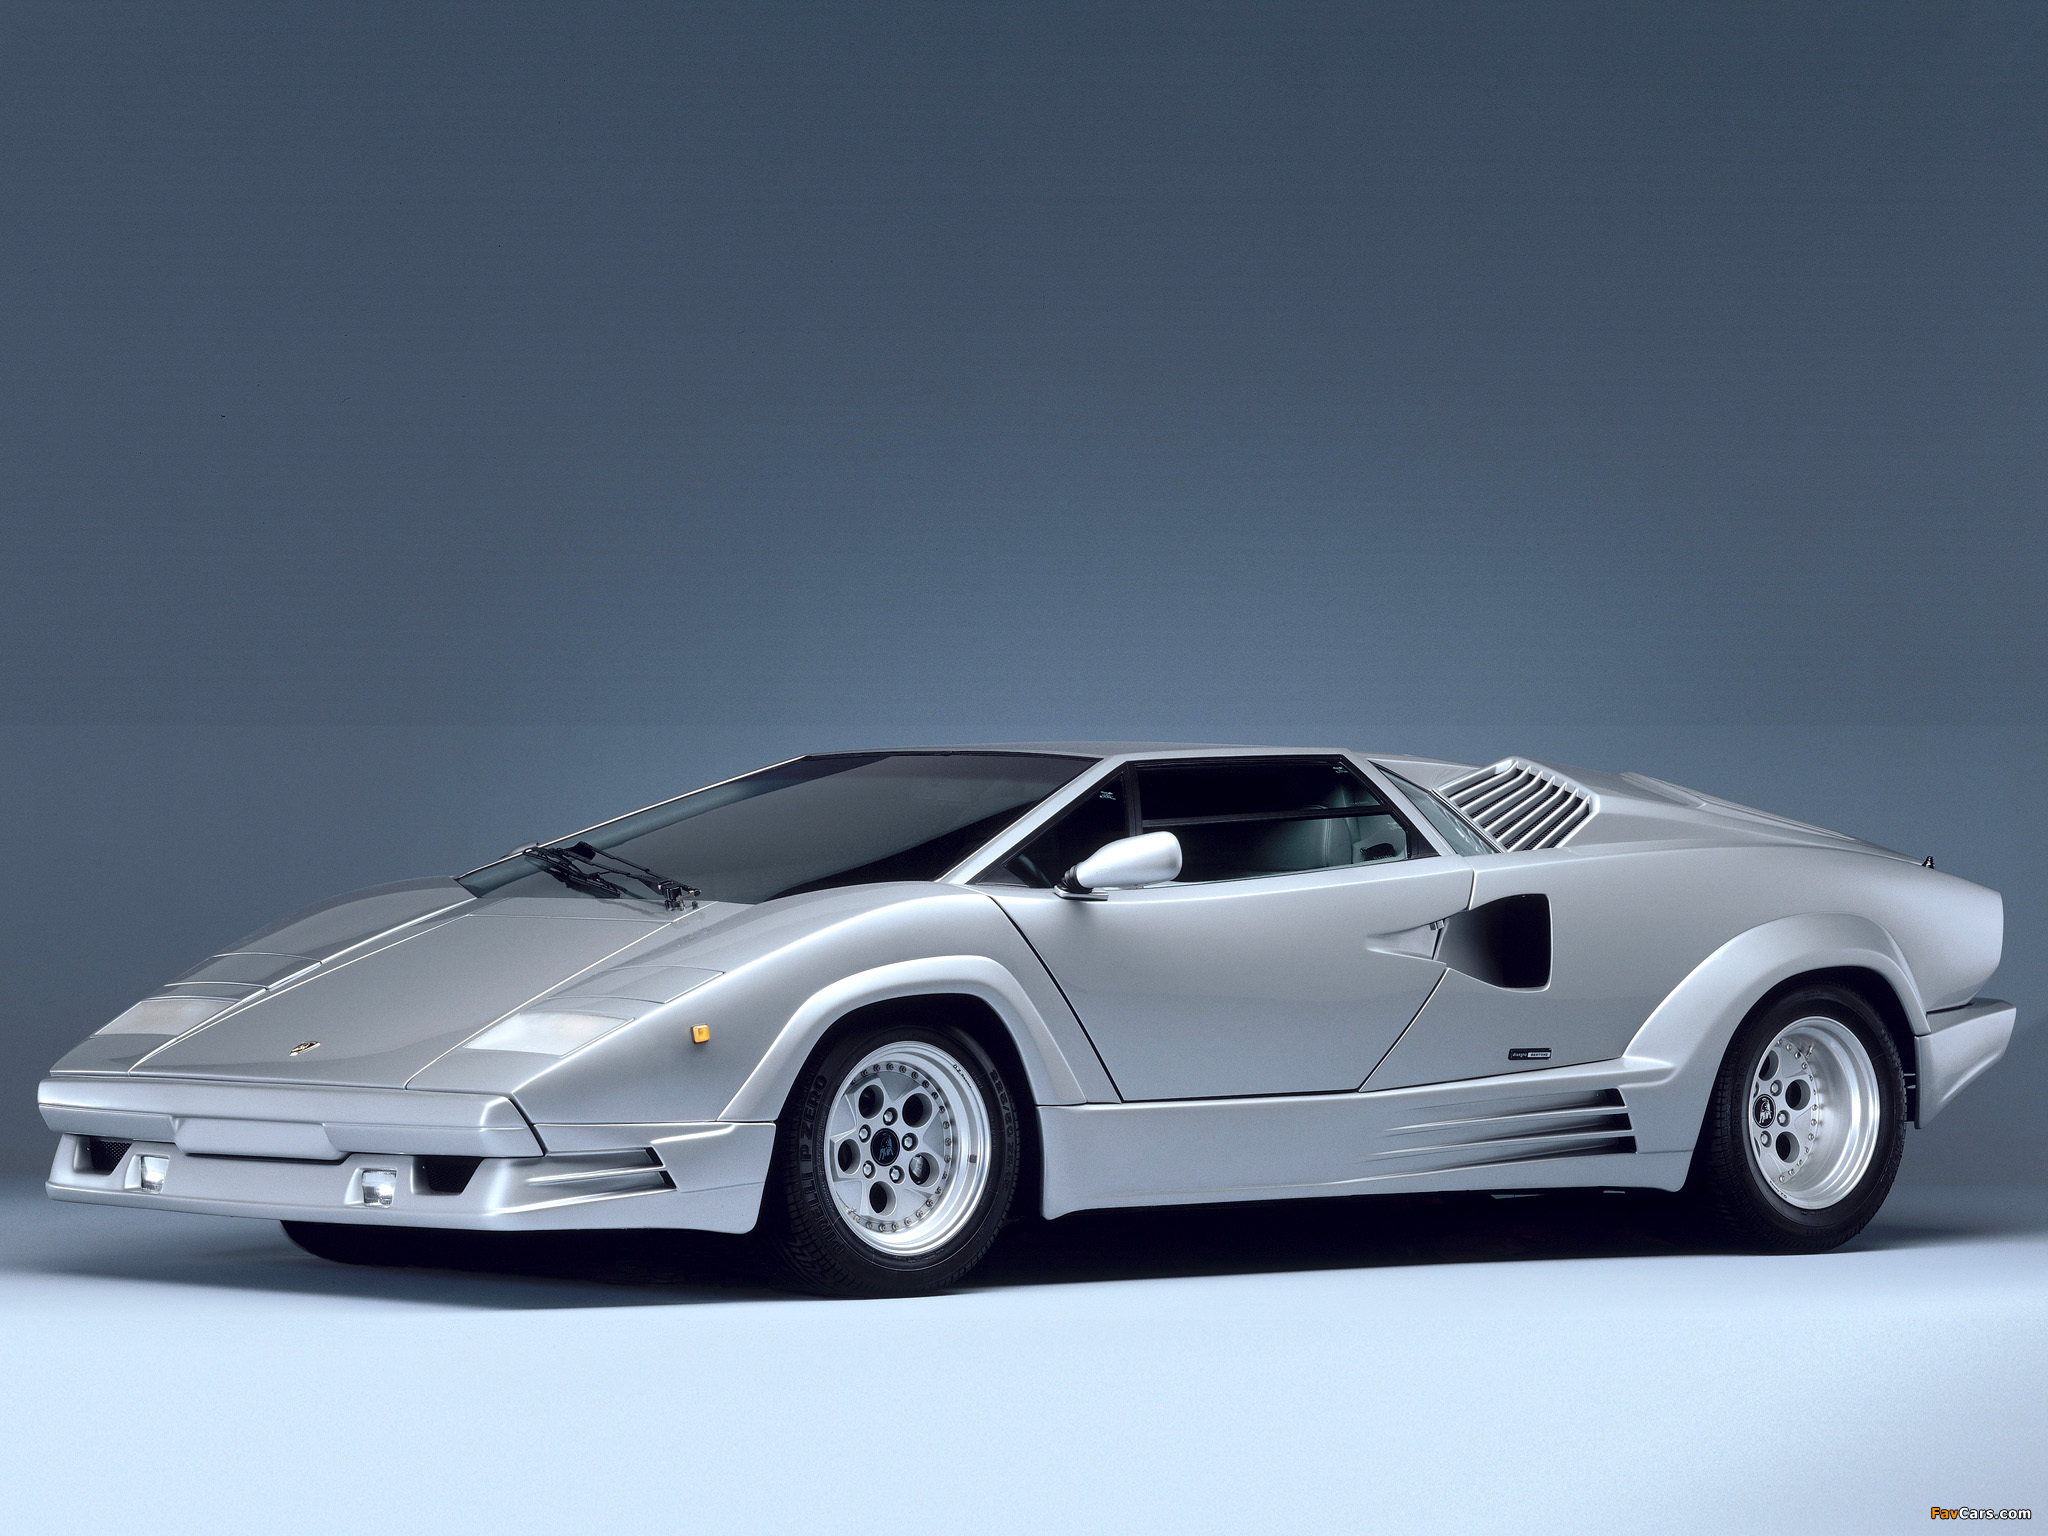 Lamborghini Countach 25th Anniversary 1988–90 image (2048x1536)